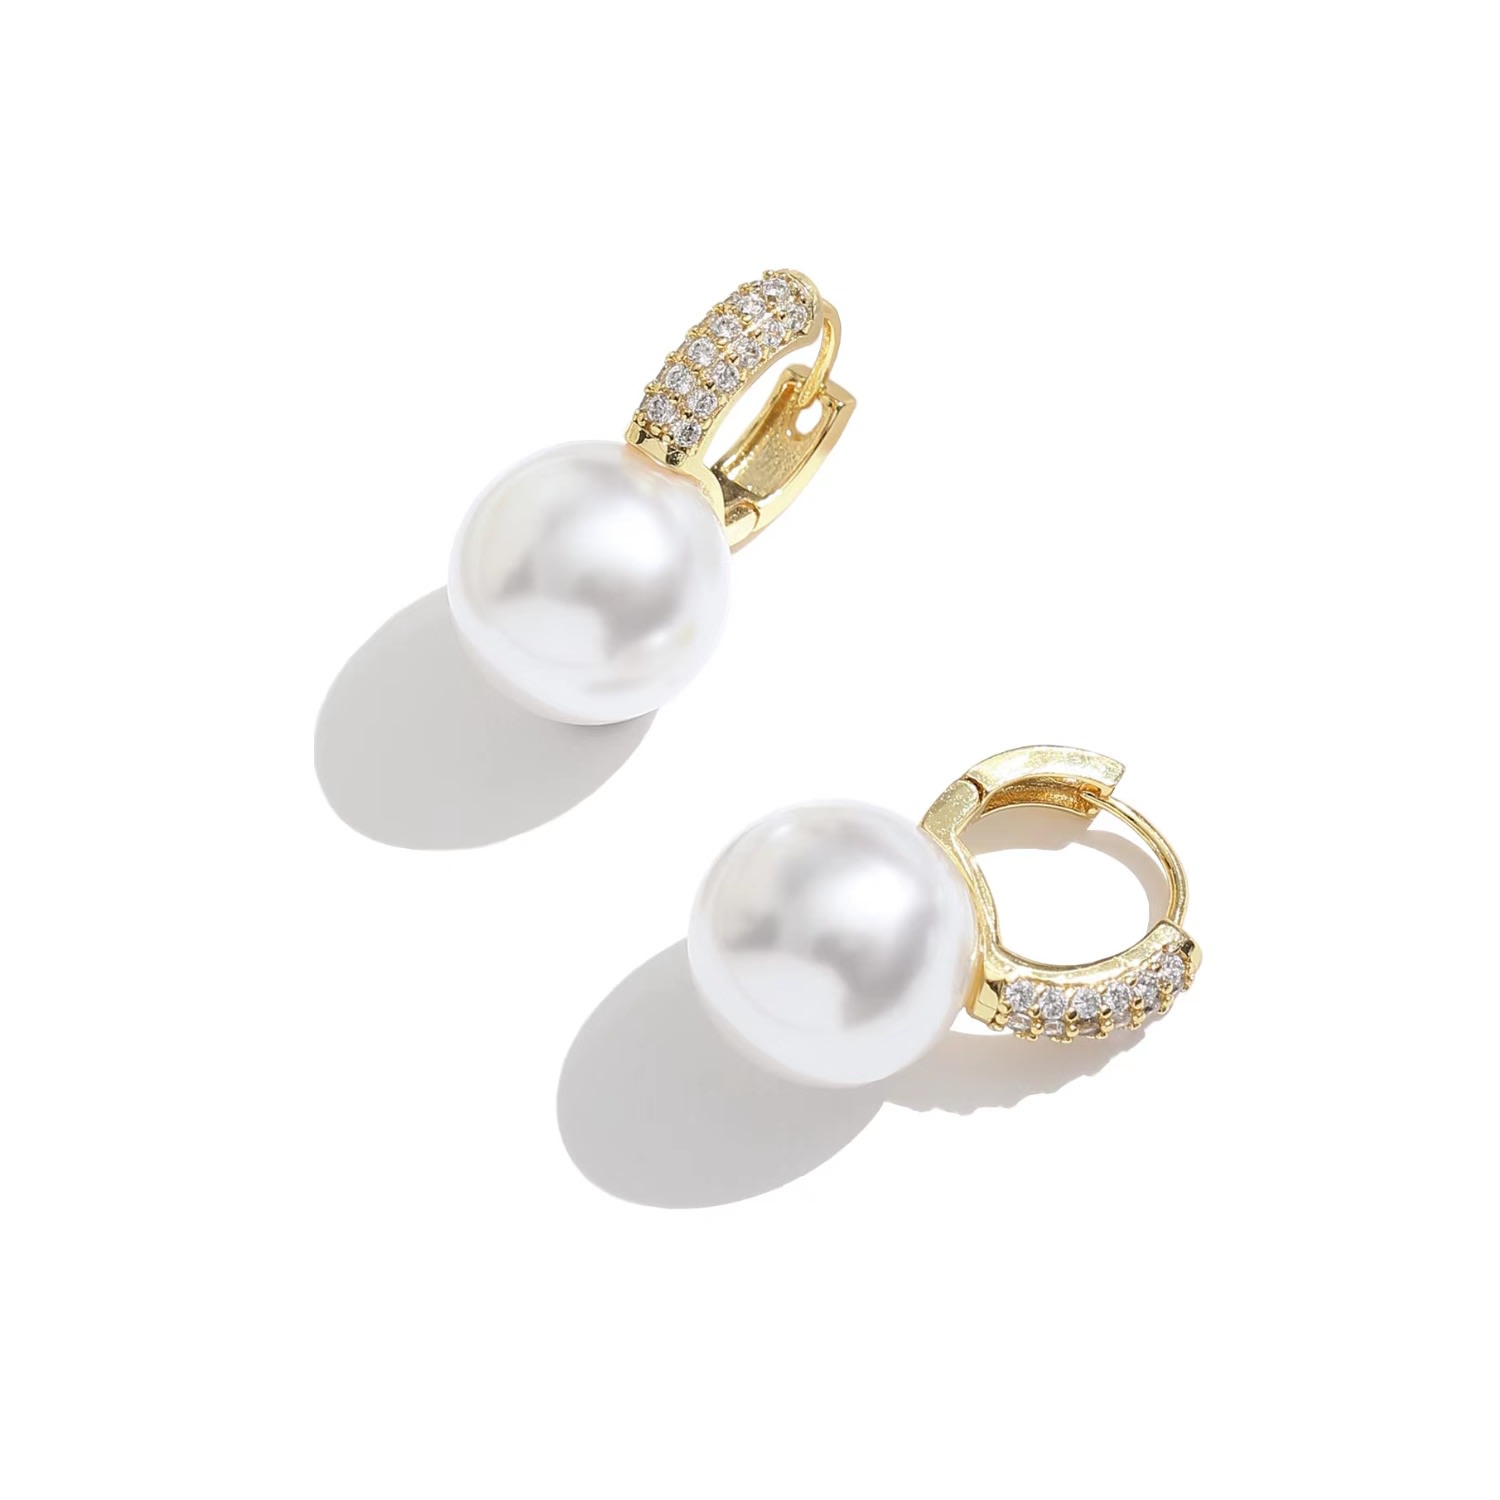 Shop Classicharms Women's Golden Pearl Hoop With Zirconia Embellishment Earrings